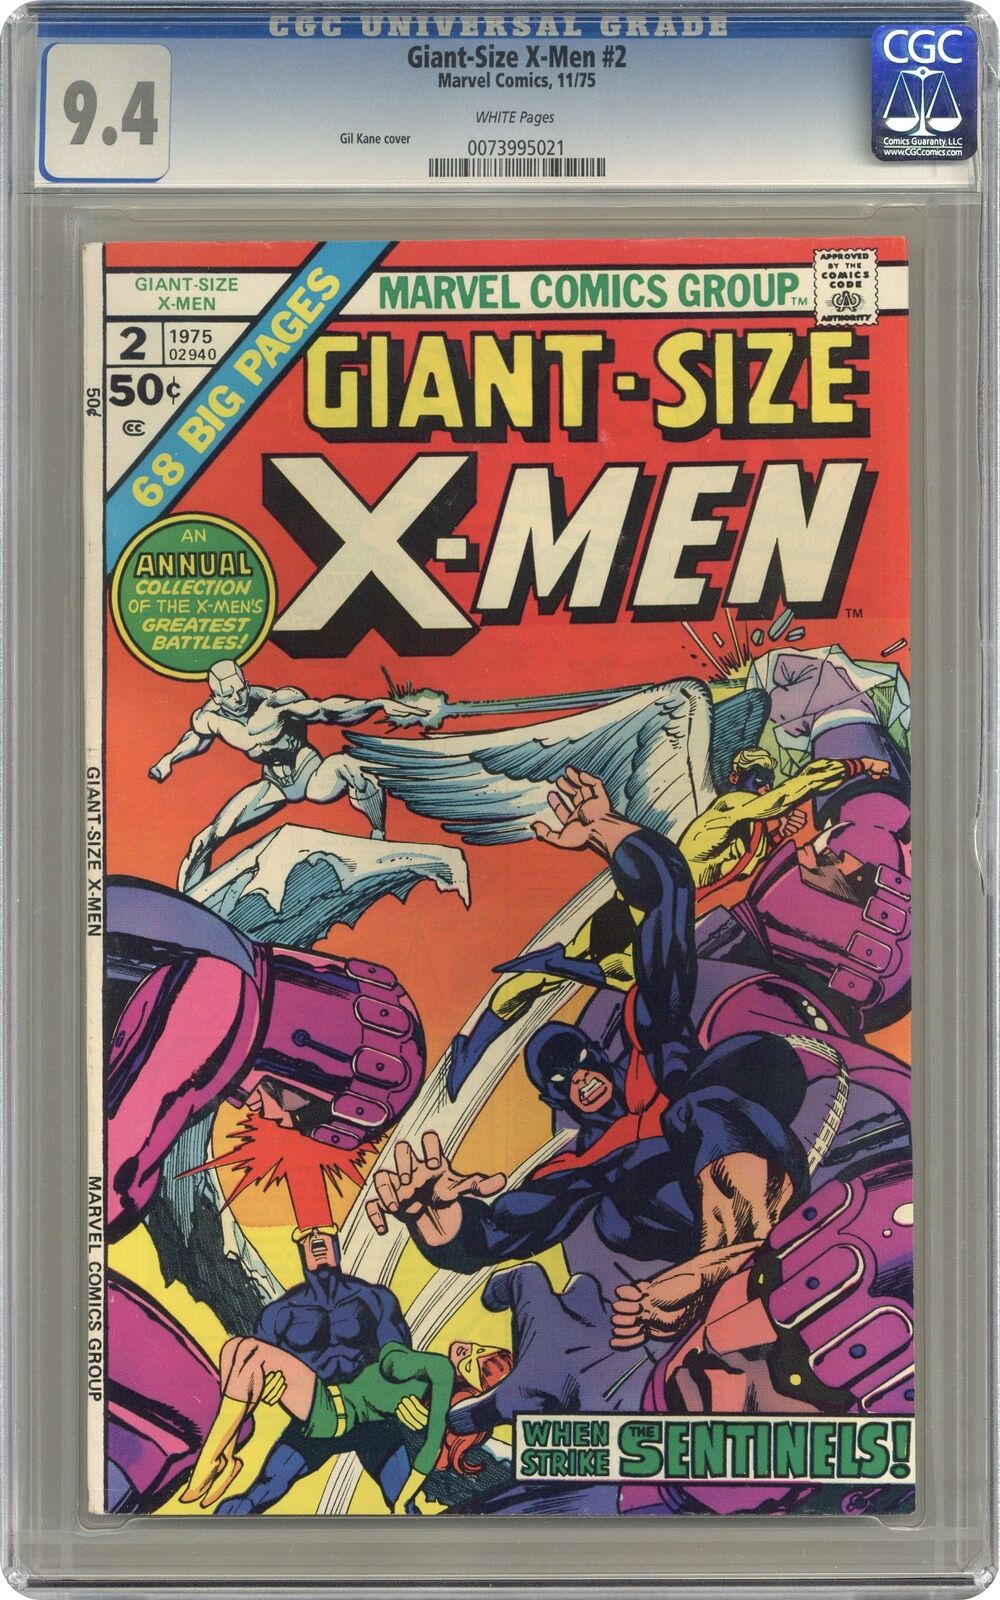 Giant Size X-Men #2 CGC 9.4 1975 0073995021